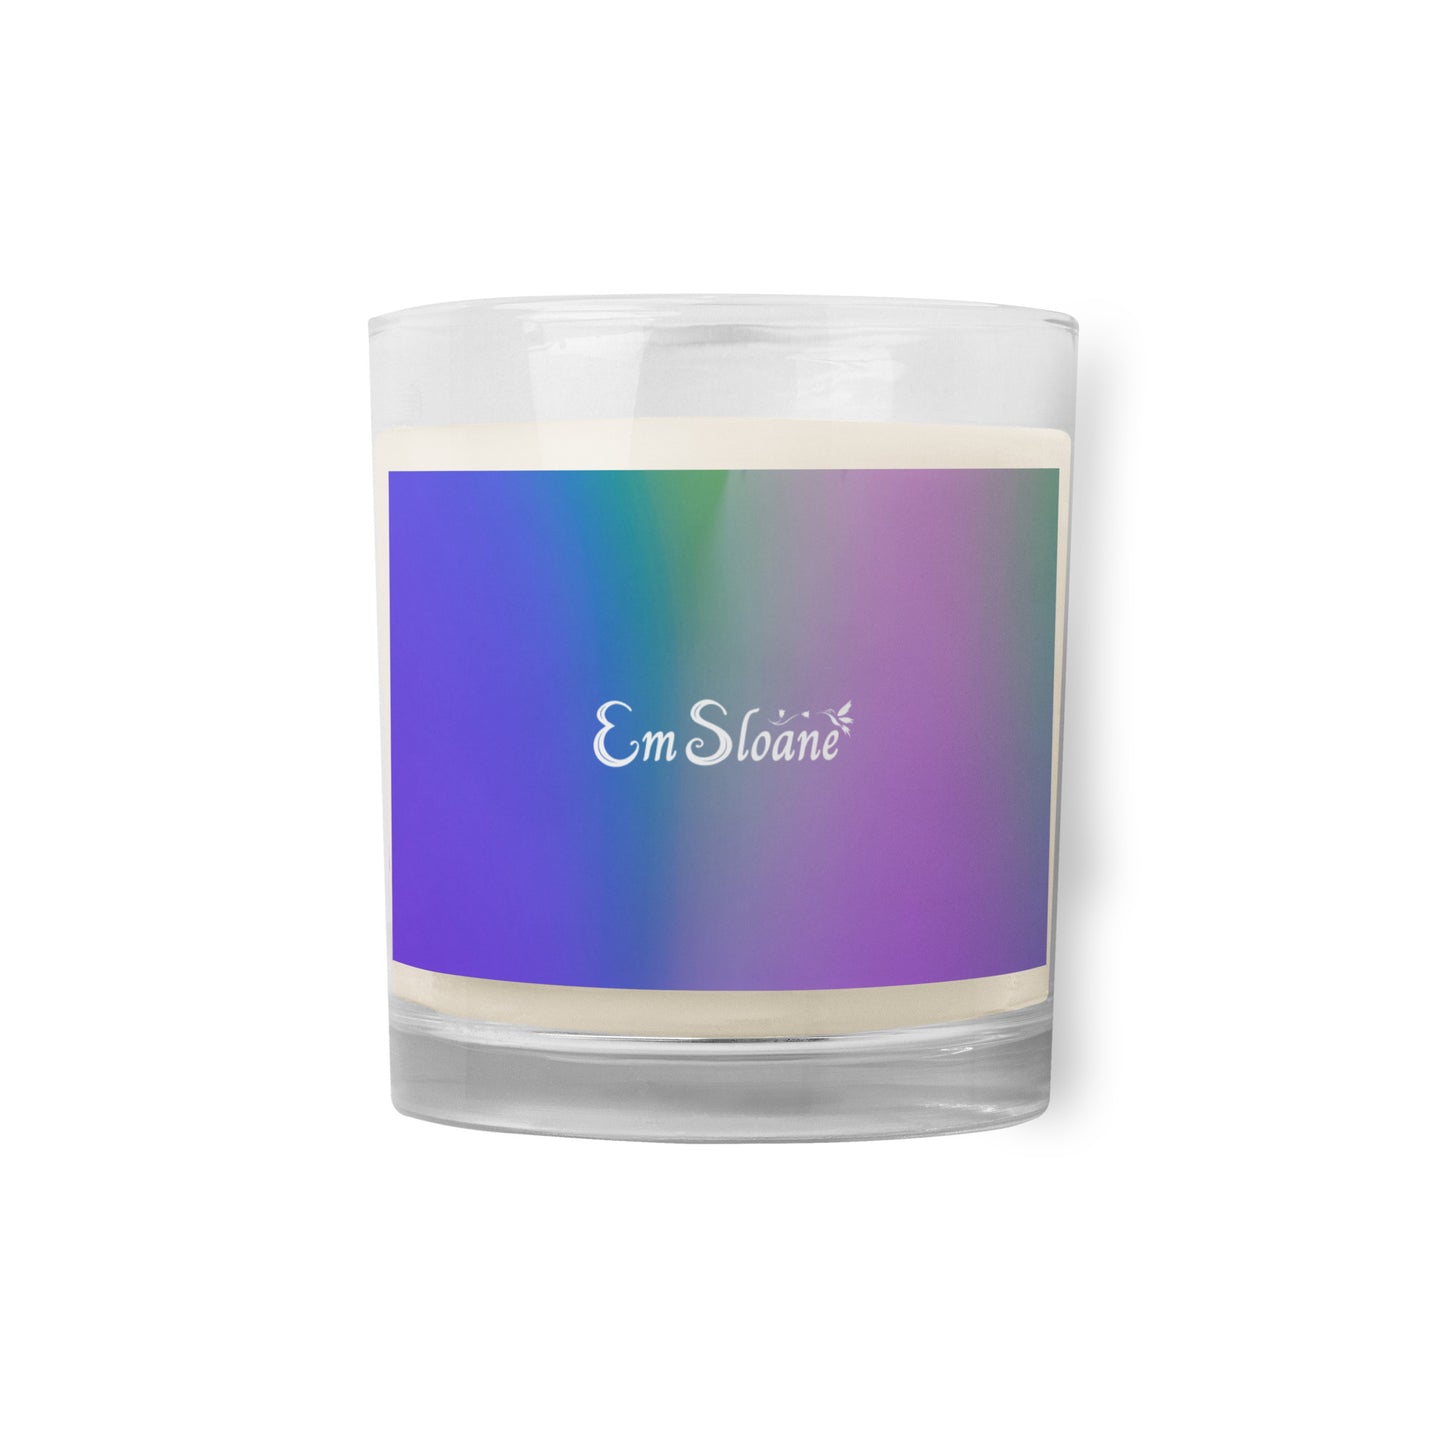 Em Sloane Colorful Candle